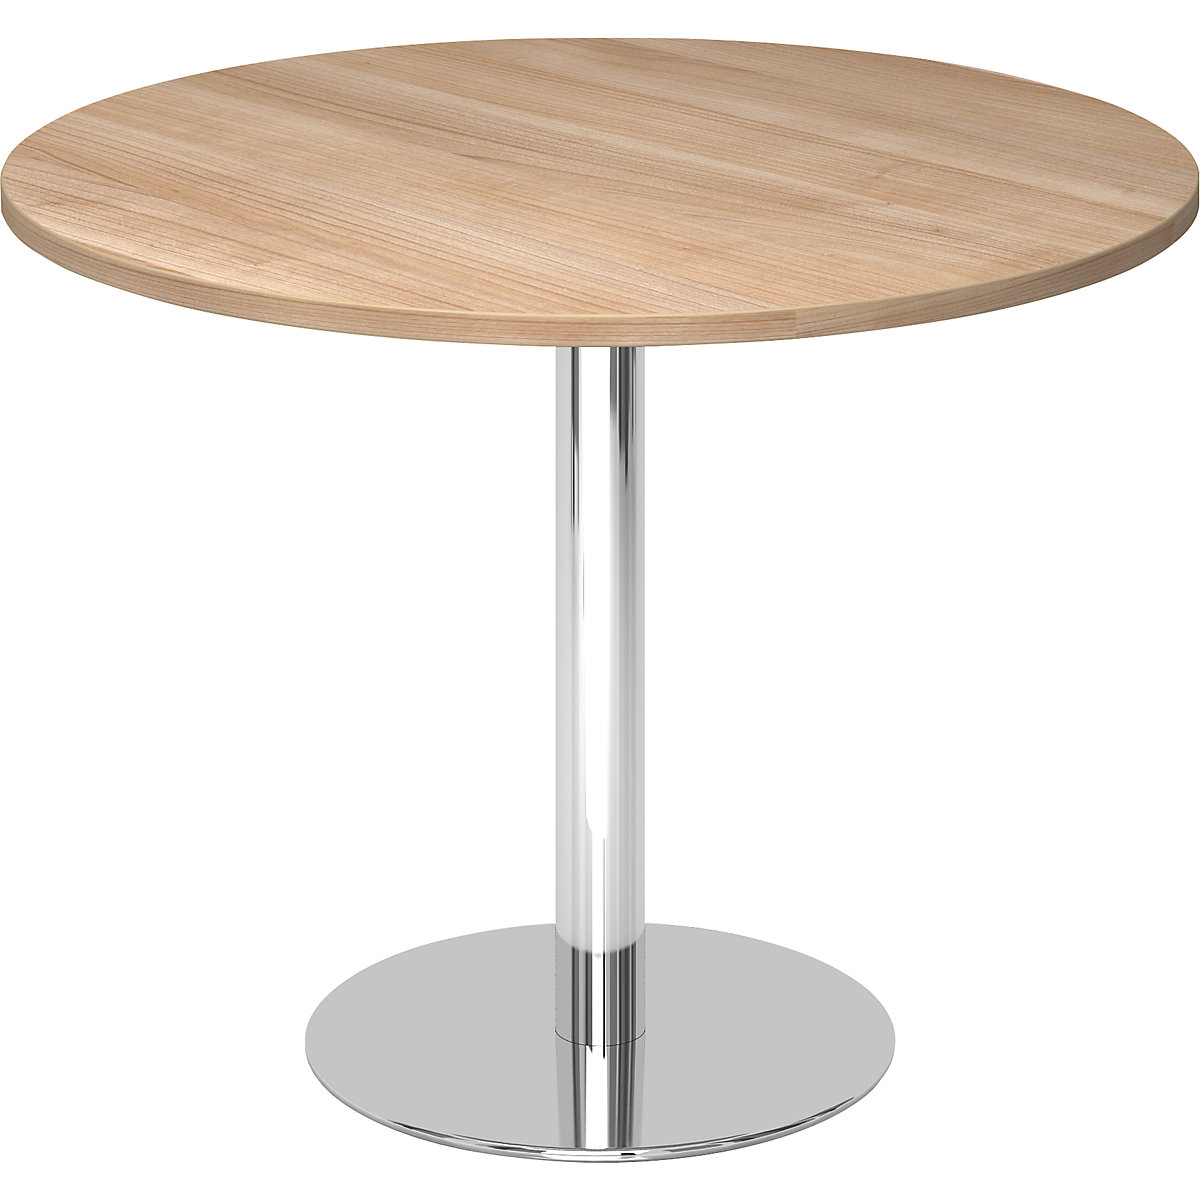 Jednací stůl, Ø 1000 mm, výška 755 mm, pochromovaný podstavec, deska ořechový dekor